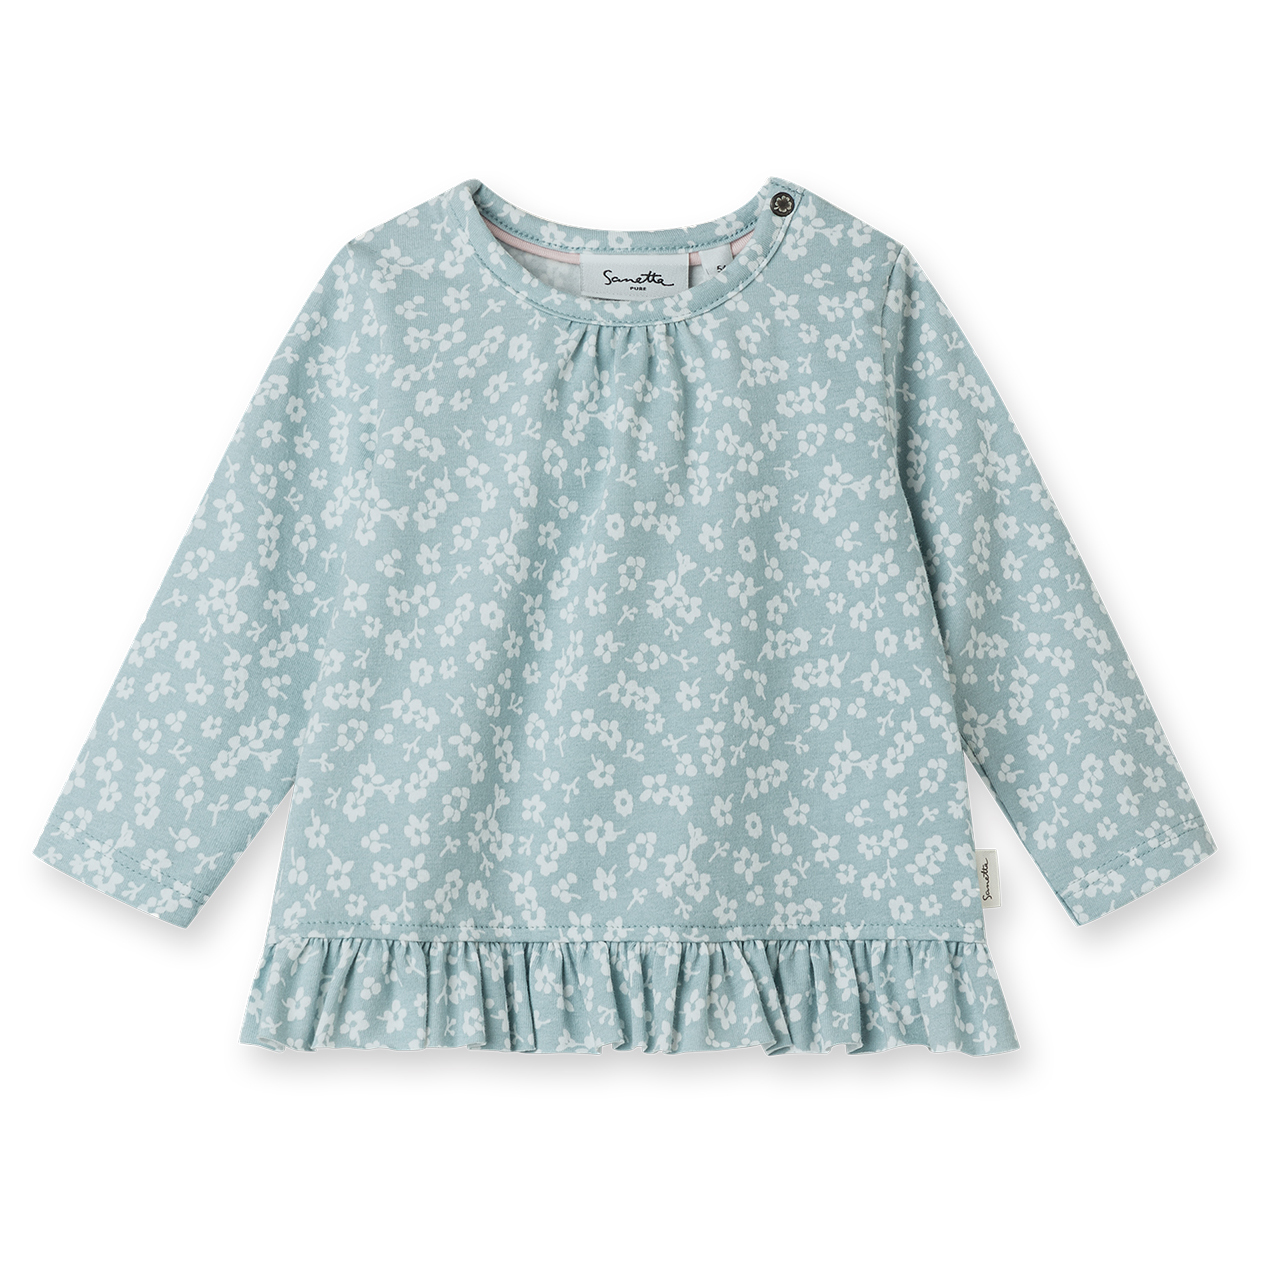 Лонгслив Sanetta Pure Baby Girls LT 1 Shirt, цвет Azur цена и фото